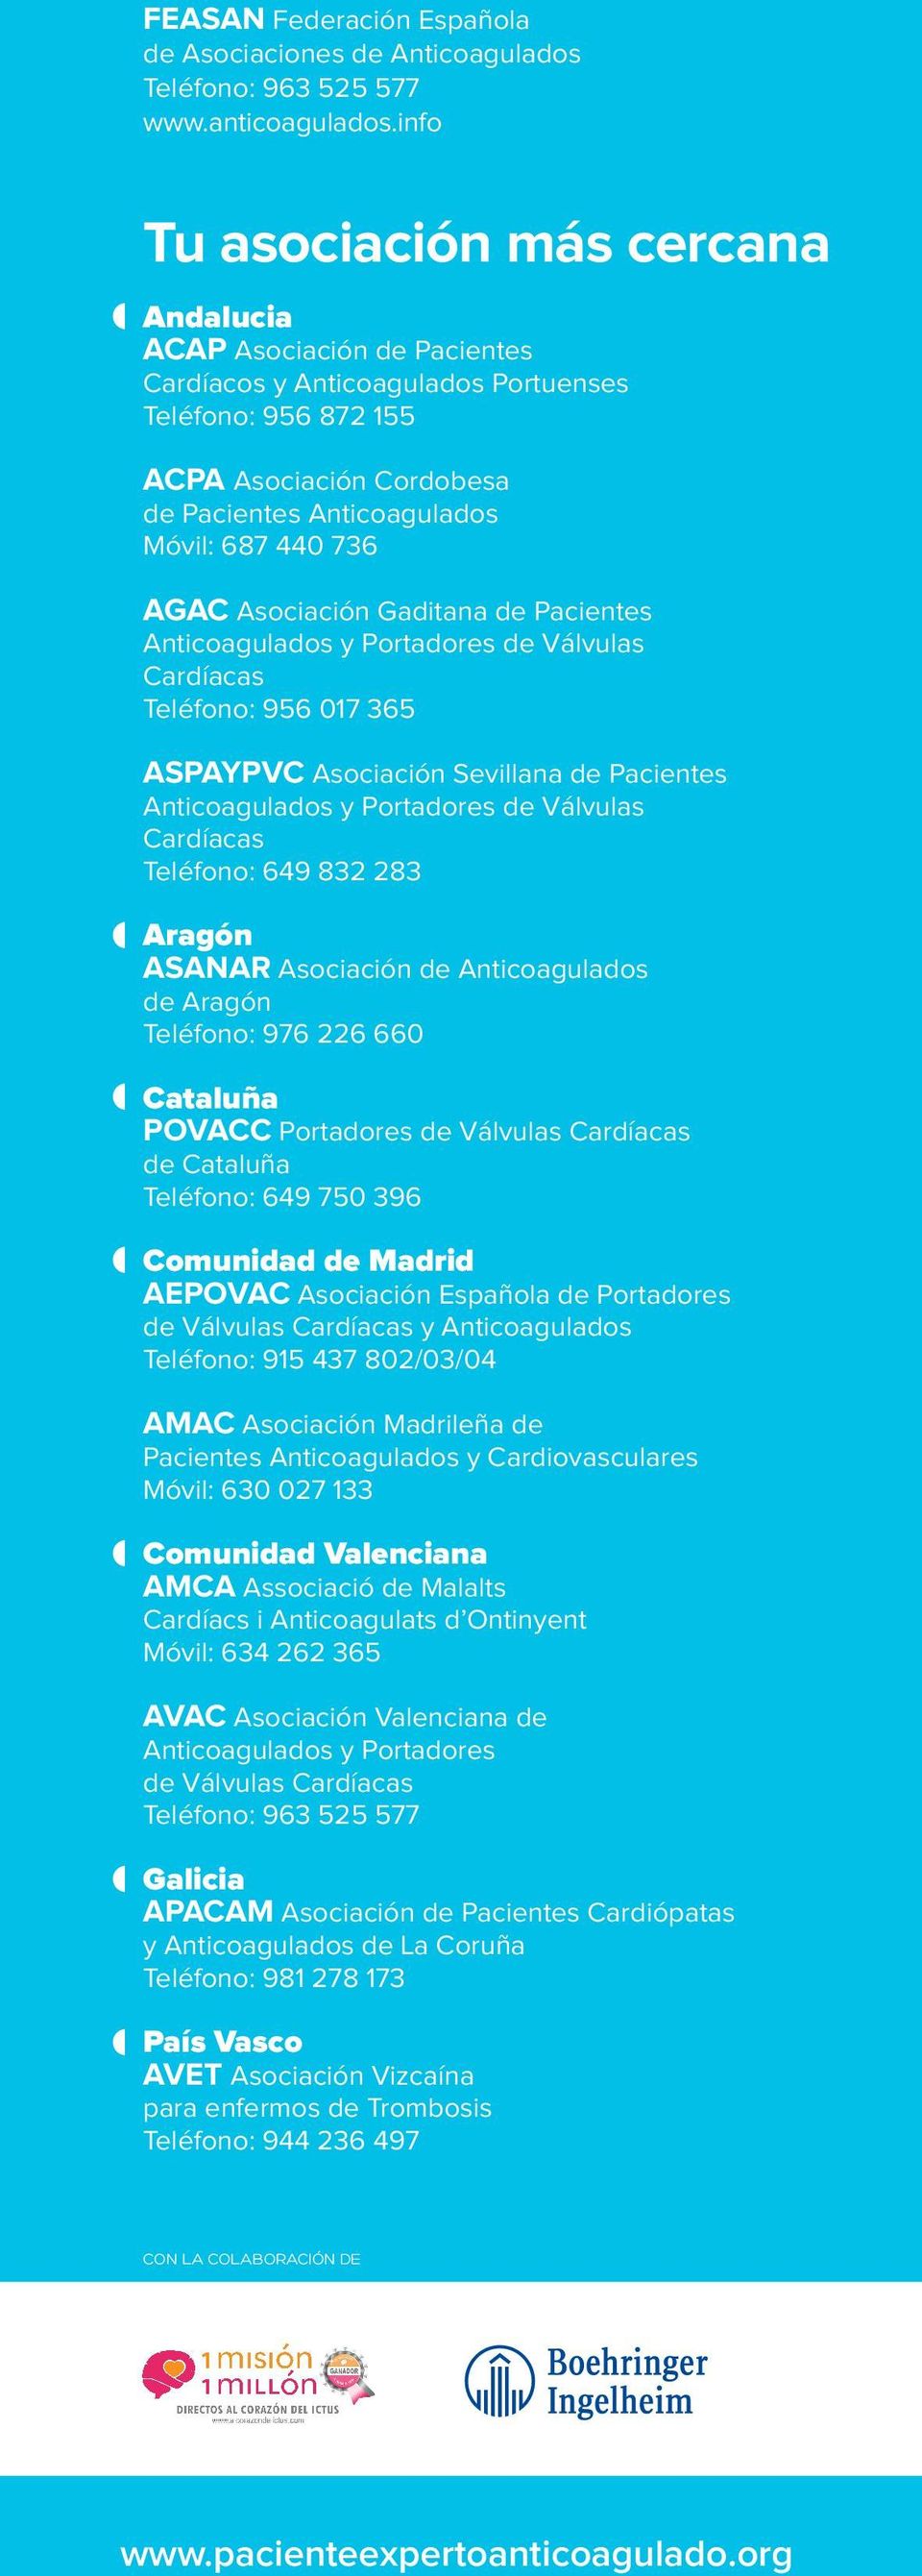 736 AGAC Asociación Gaditana de Pacientes Anticoagulados y Portadores de Válvulas Cardíacas Teléfono: 956 017 365 ASPAYPVC Asociación Sevillana de Pacientes Anticoagulados y Portadores de Válvulas